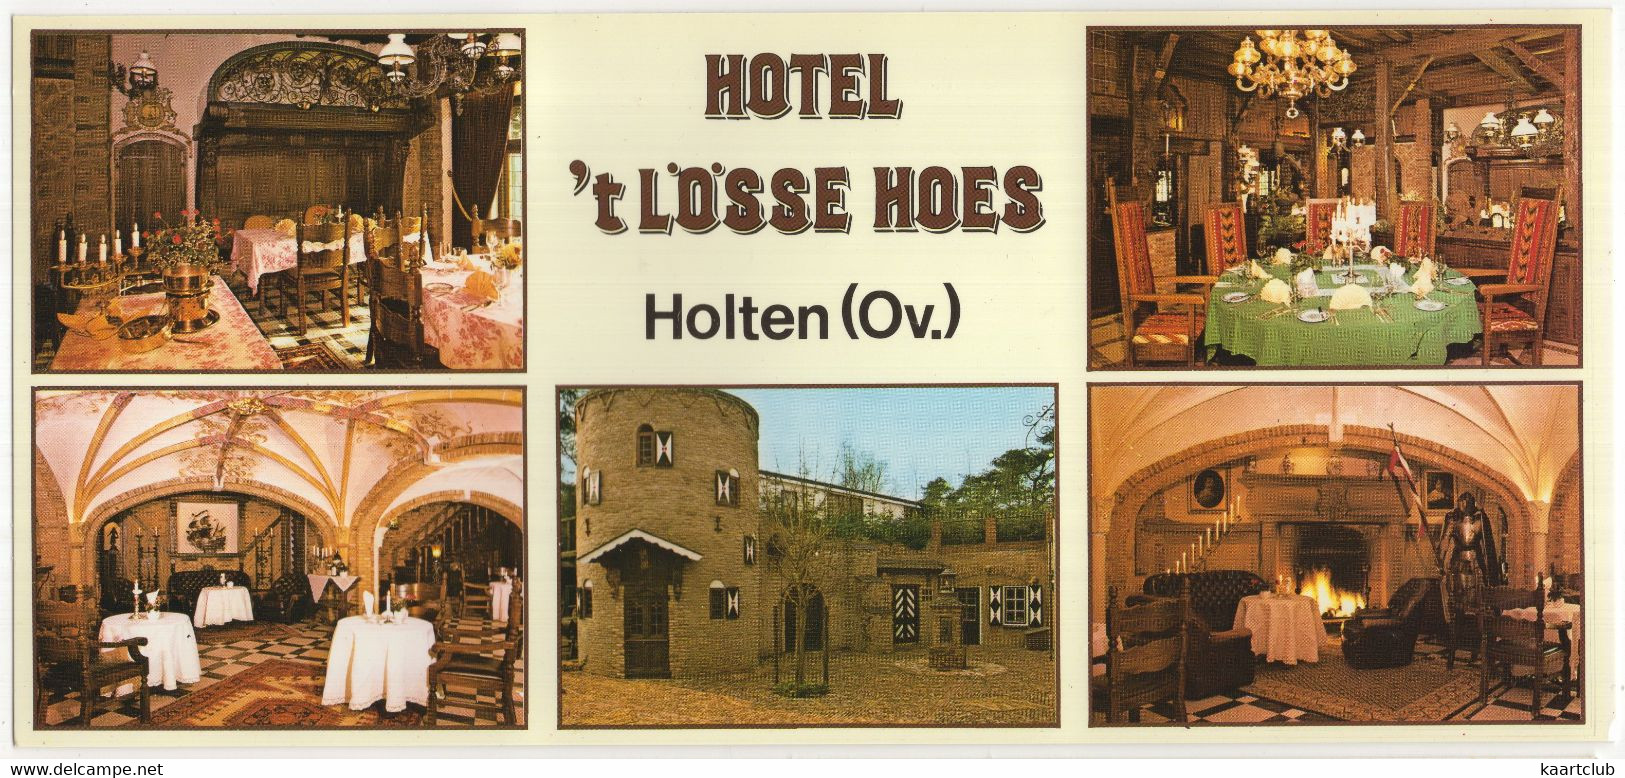 Holten - Hotel 't Lösse Hoes', Holterbergweg 14 - (Ov., Nederland) - (Lange Ansichtkaart: 22 Cm X 10.3 Cm) - Holten